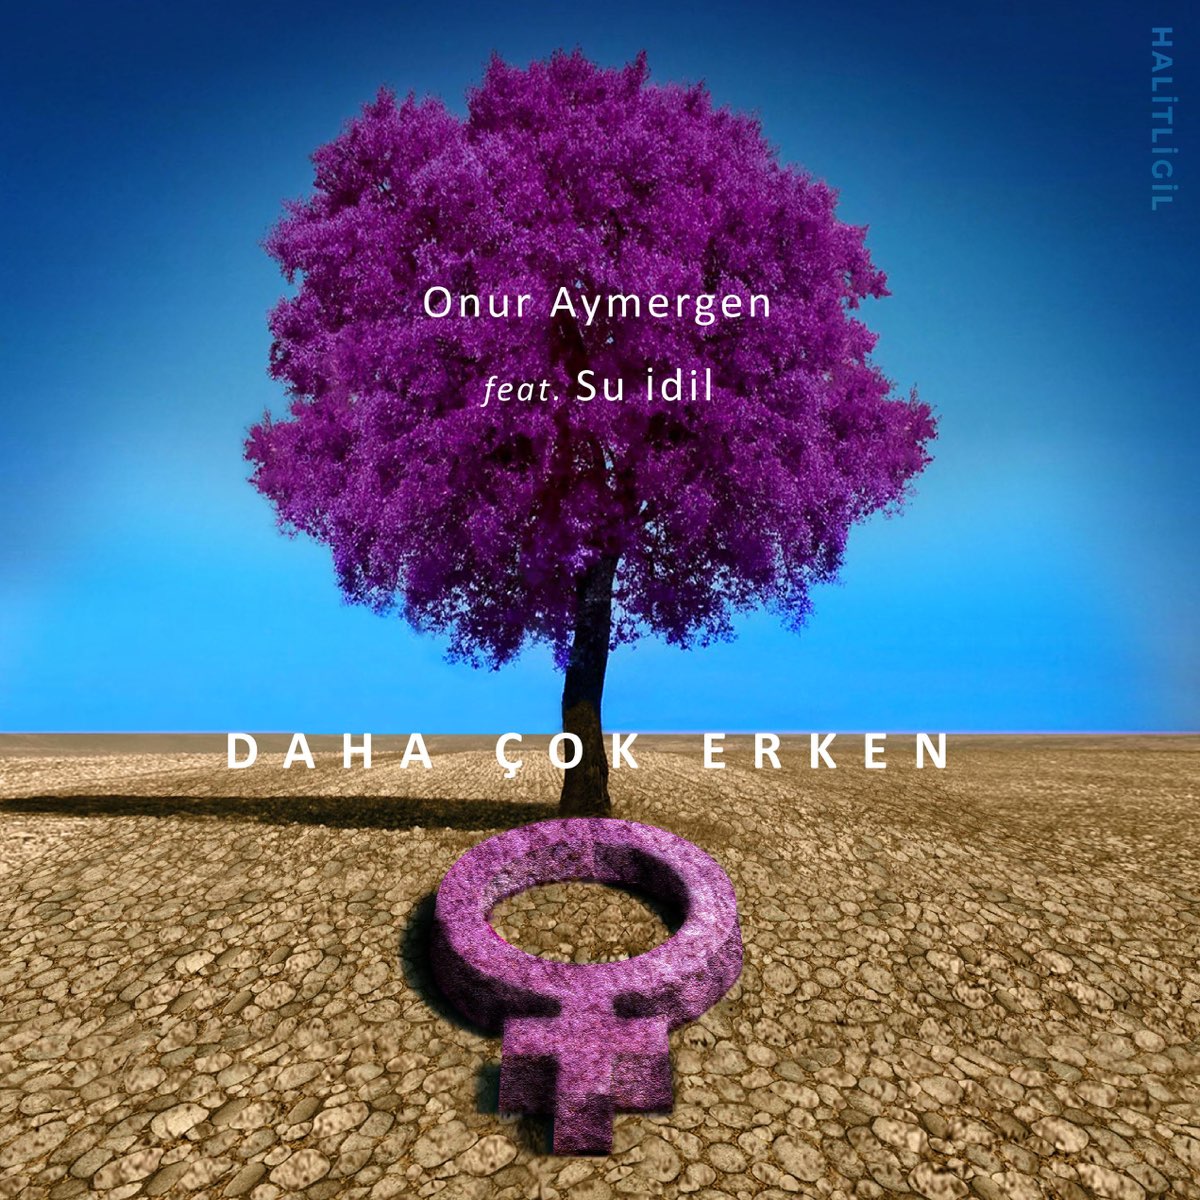 Onur Aymergen featuring Su İdil Daha Çok Erken